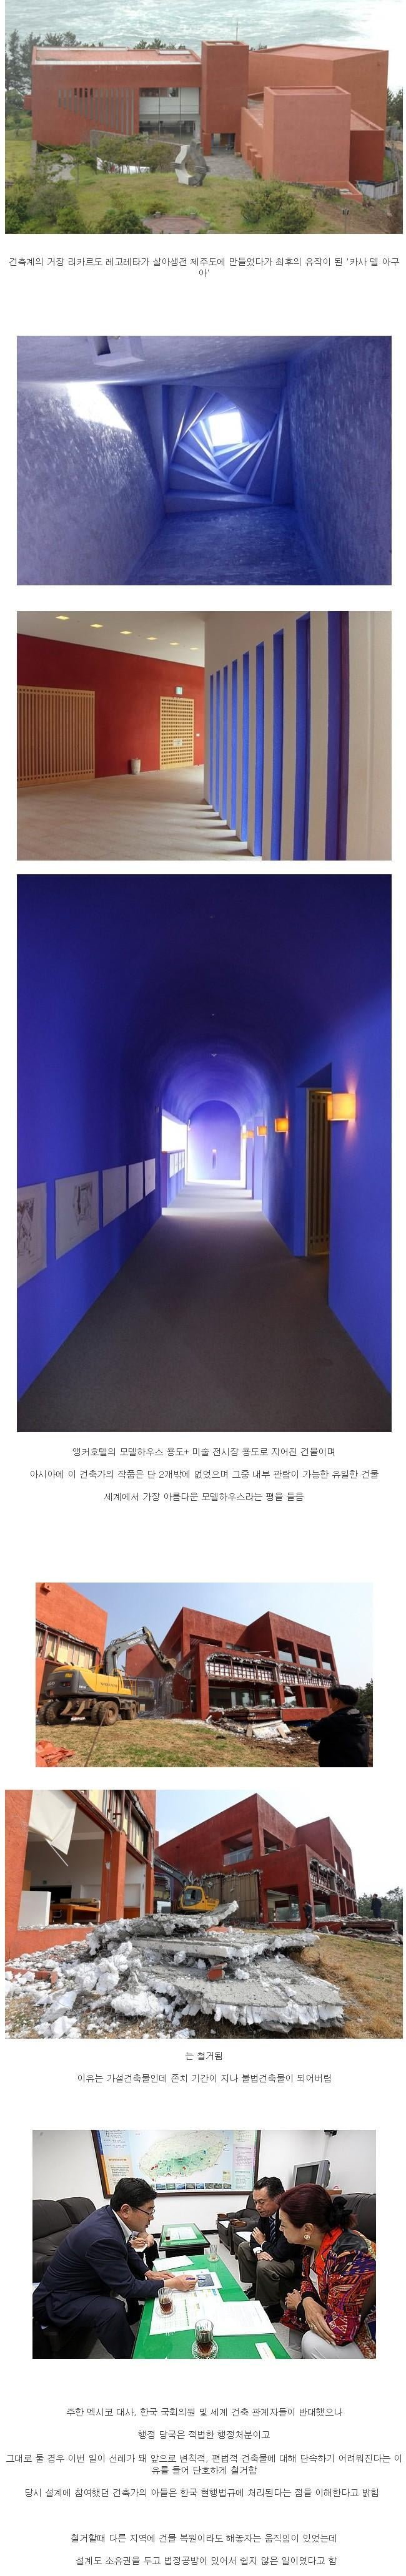 전세계 건축관계자들이 한국을 향해 오열한 사건 .jpg